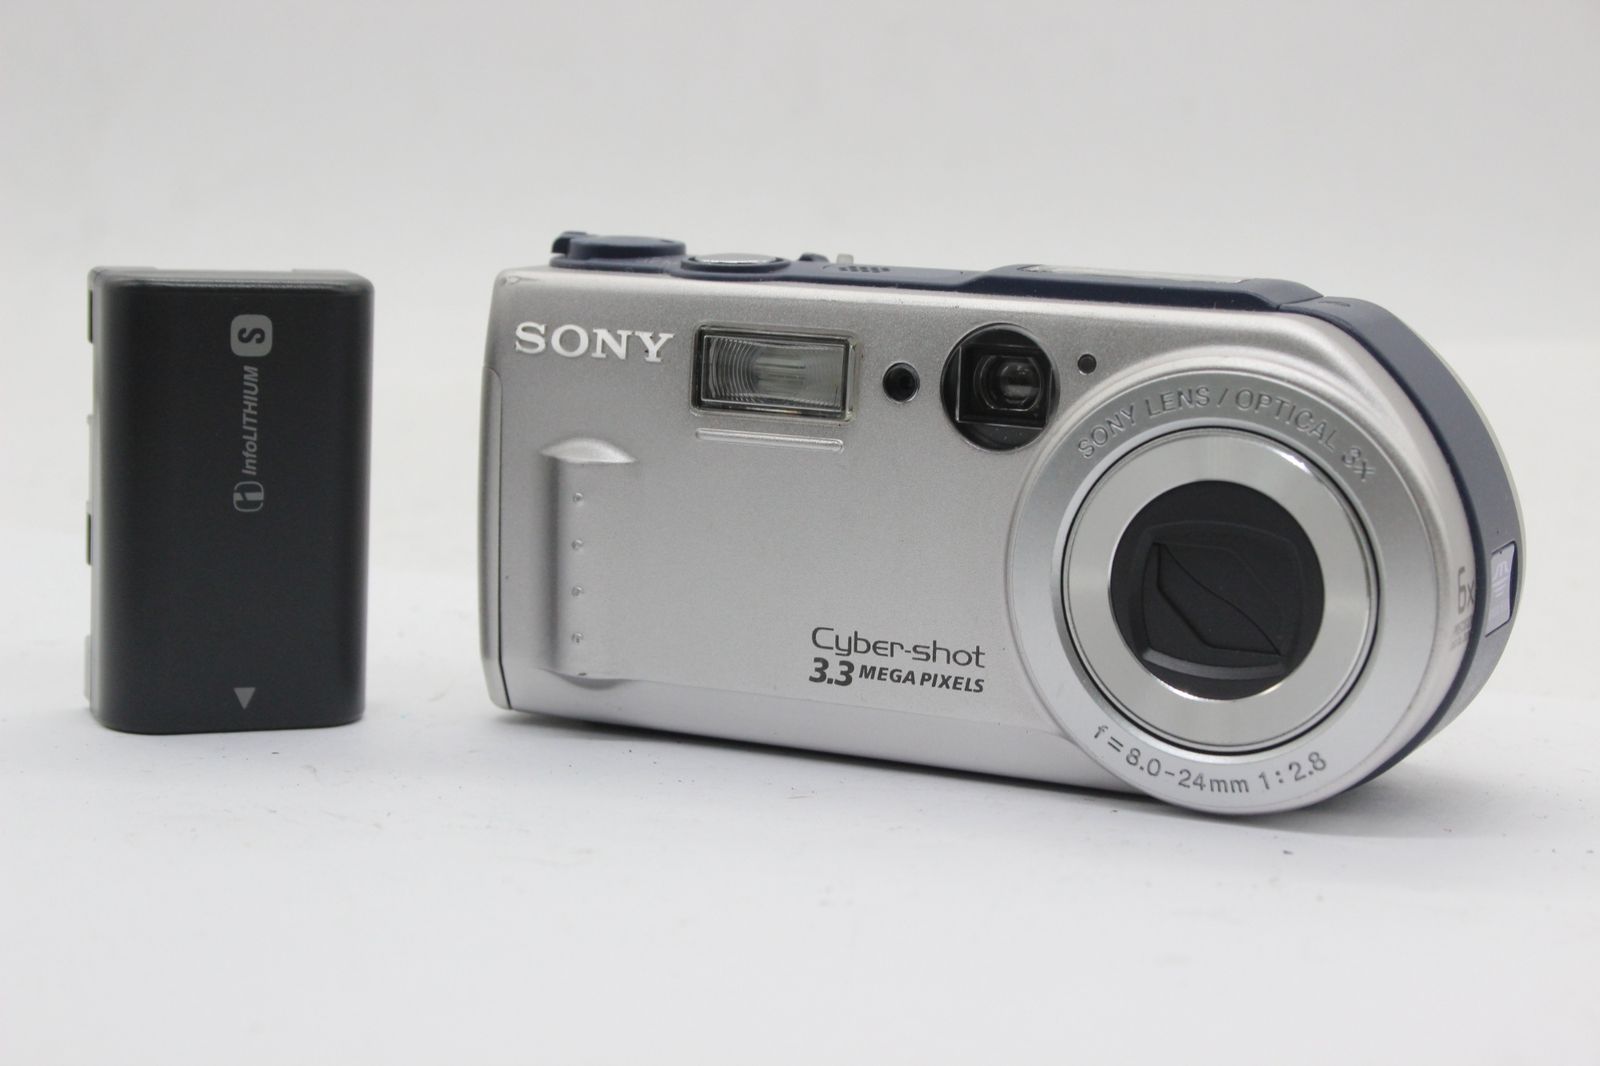 SONY 【返品保証】 ソニー SONY Cyber-shot DSC-P1 6x バッテリー付き コンパクトデジタルカメラ s9914